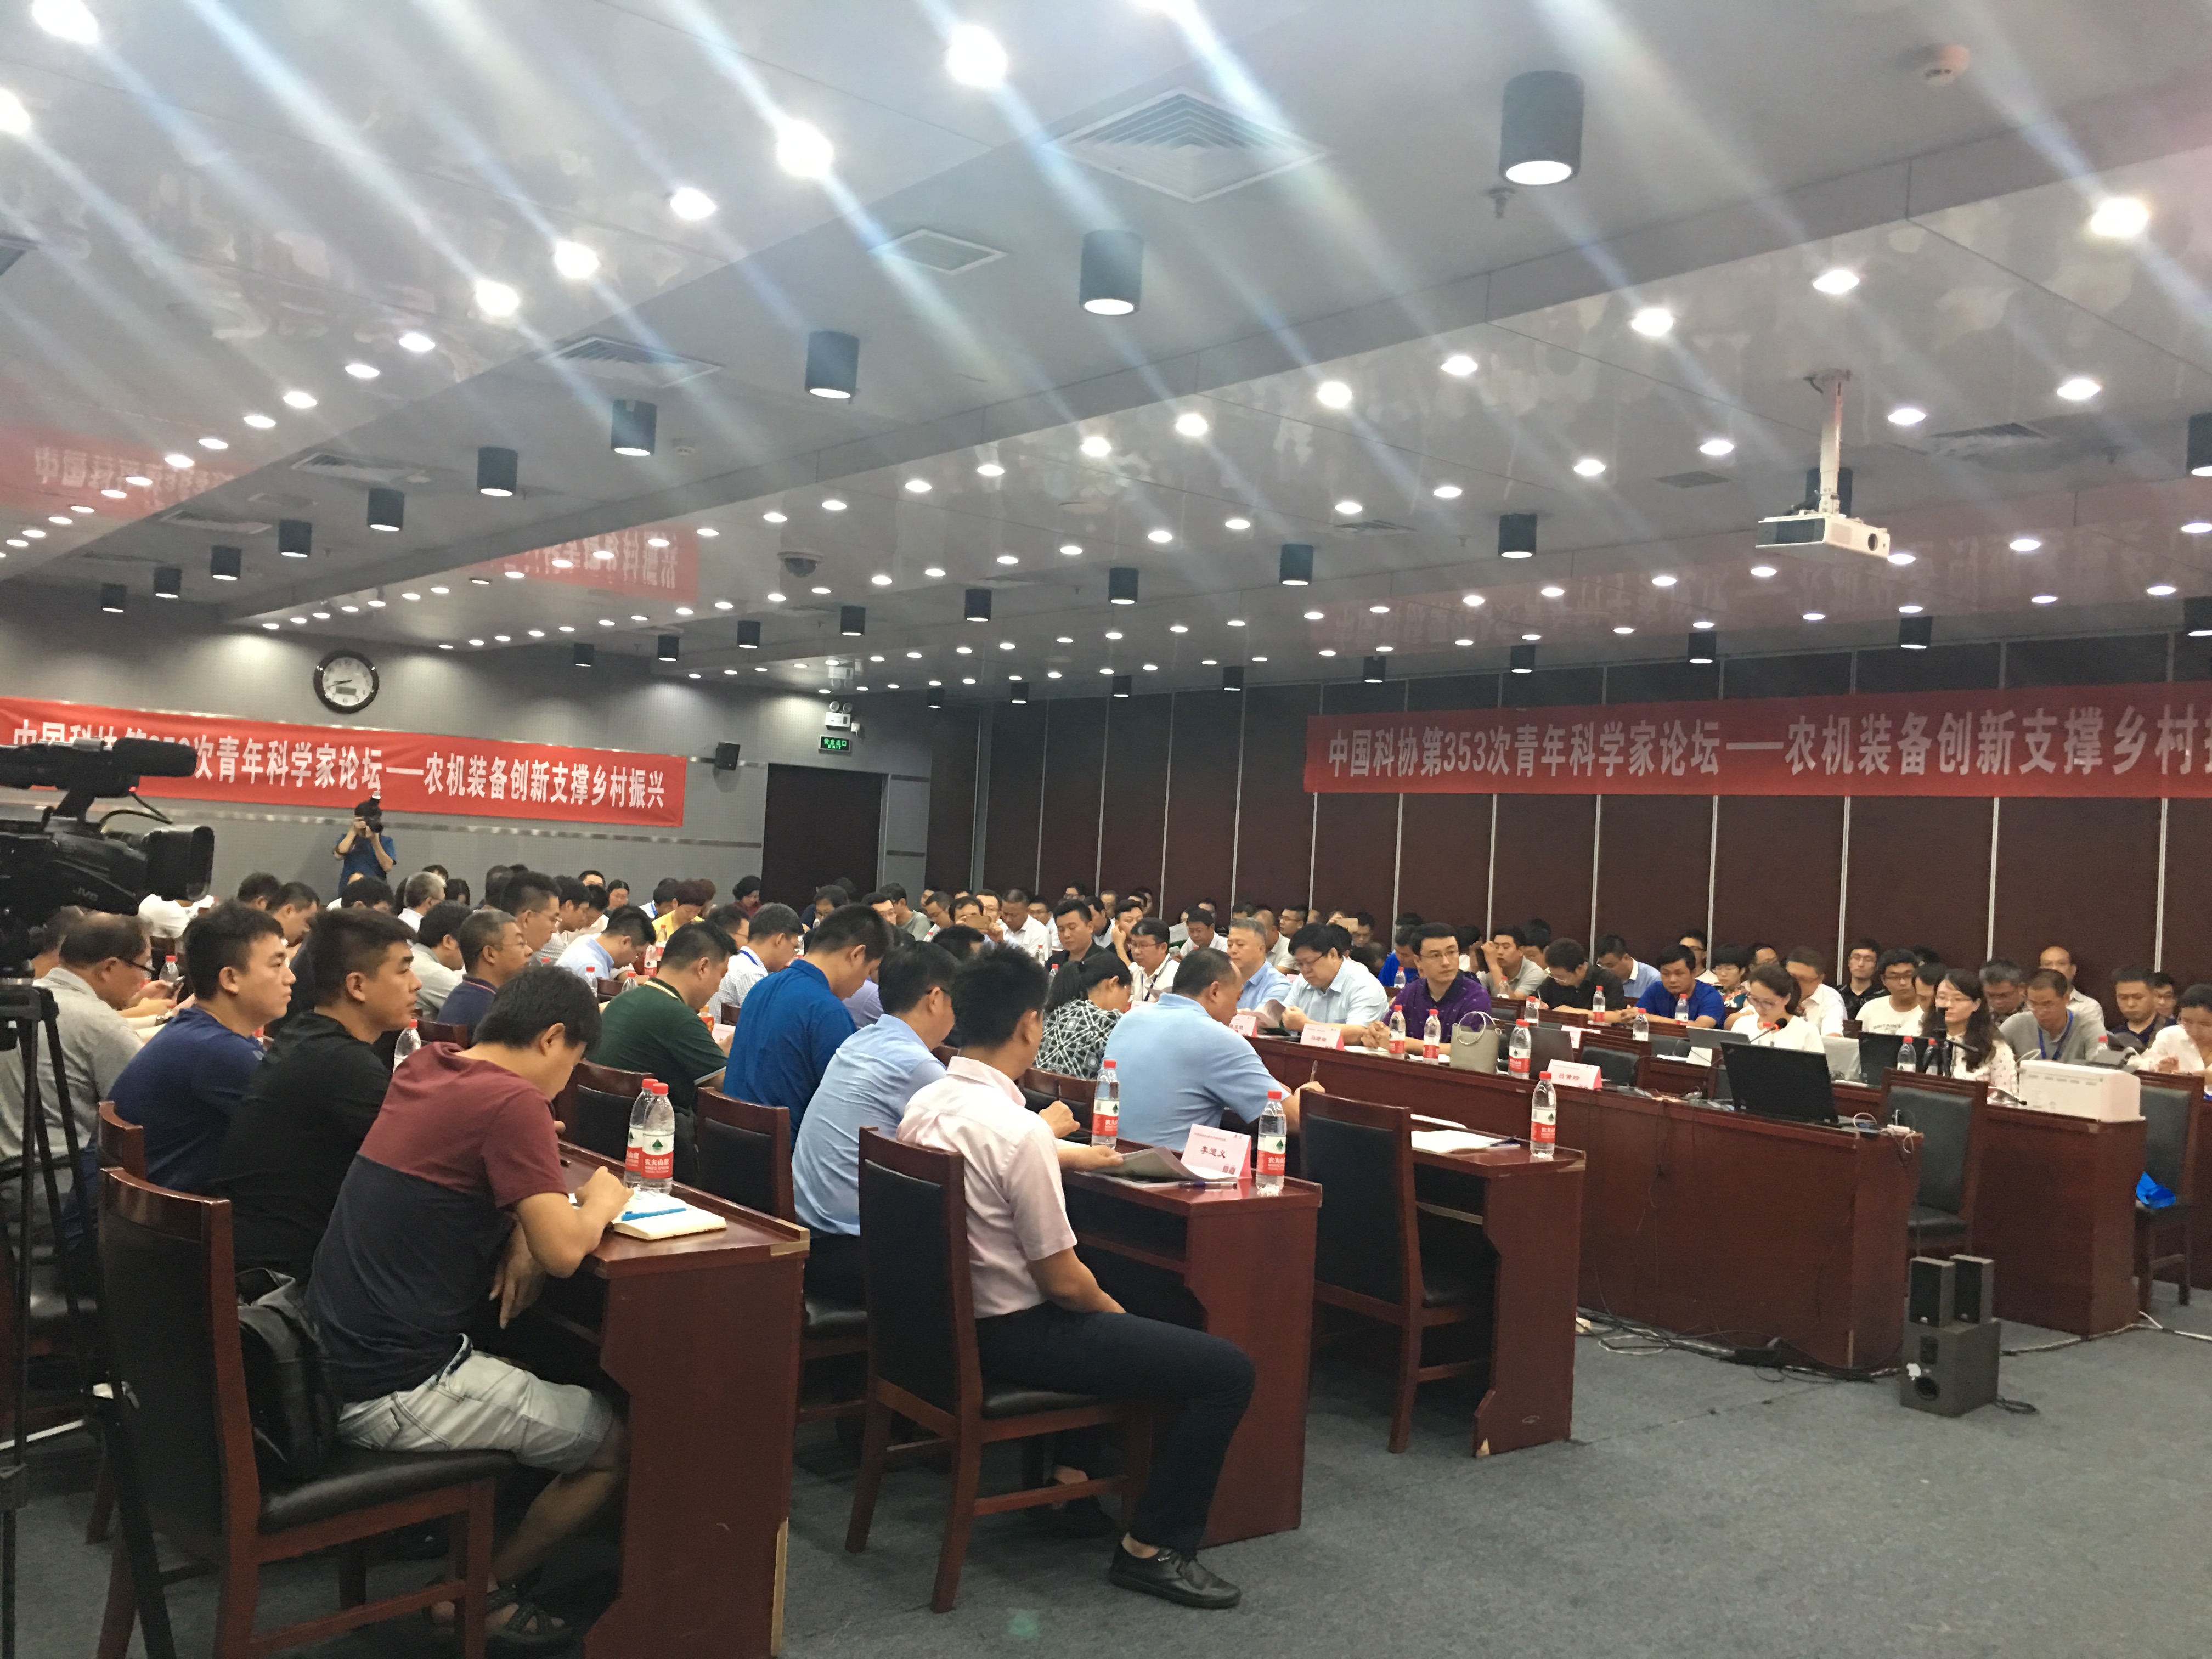 中国科学技术协会第353次青年科学家论坛“农机装备创新支撑乡村振兴”在京召开